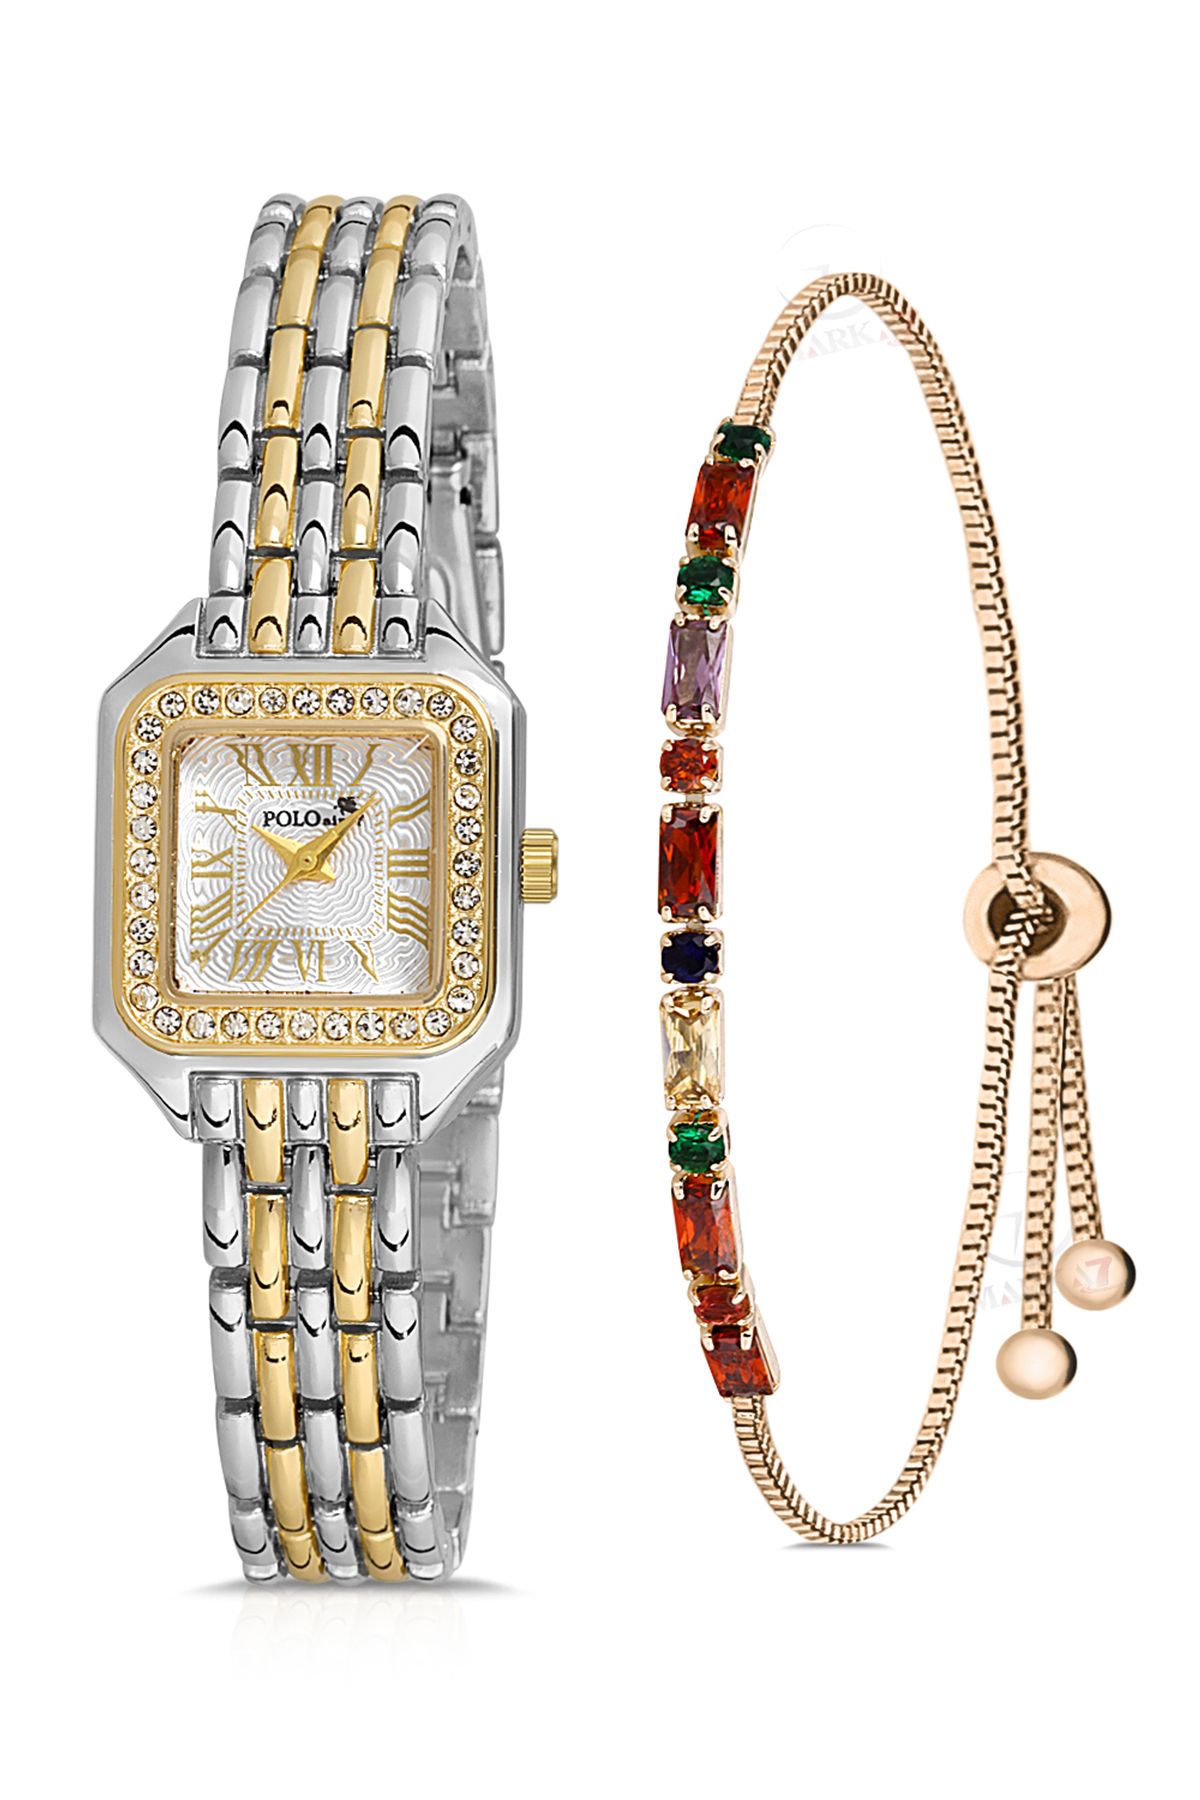 Romen Rakamlı Vintage Kadın Kol Saati Ve Zirkon Renkli Taşlı Bileklik Hediye Karışık Pl-1475B3 Gümüşe Gold Pl-1475B3